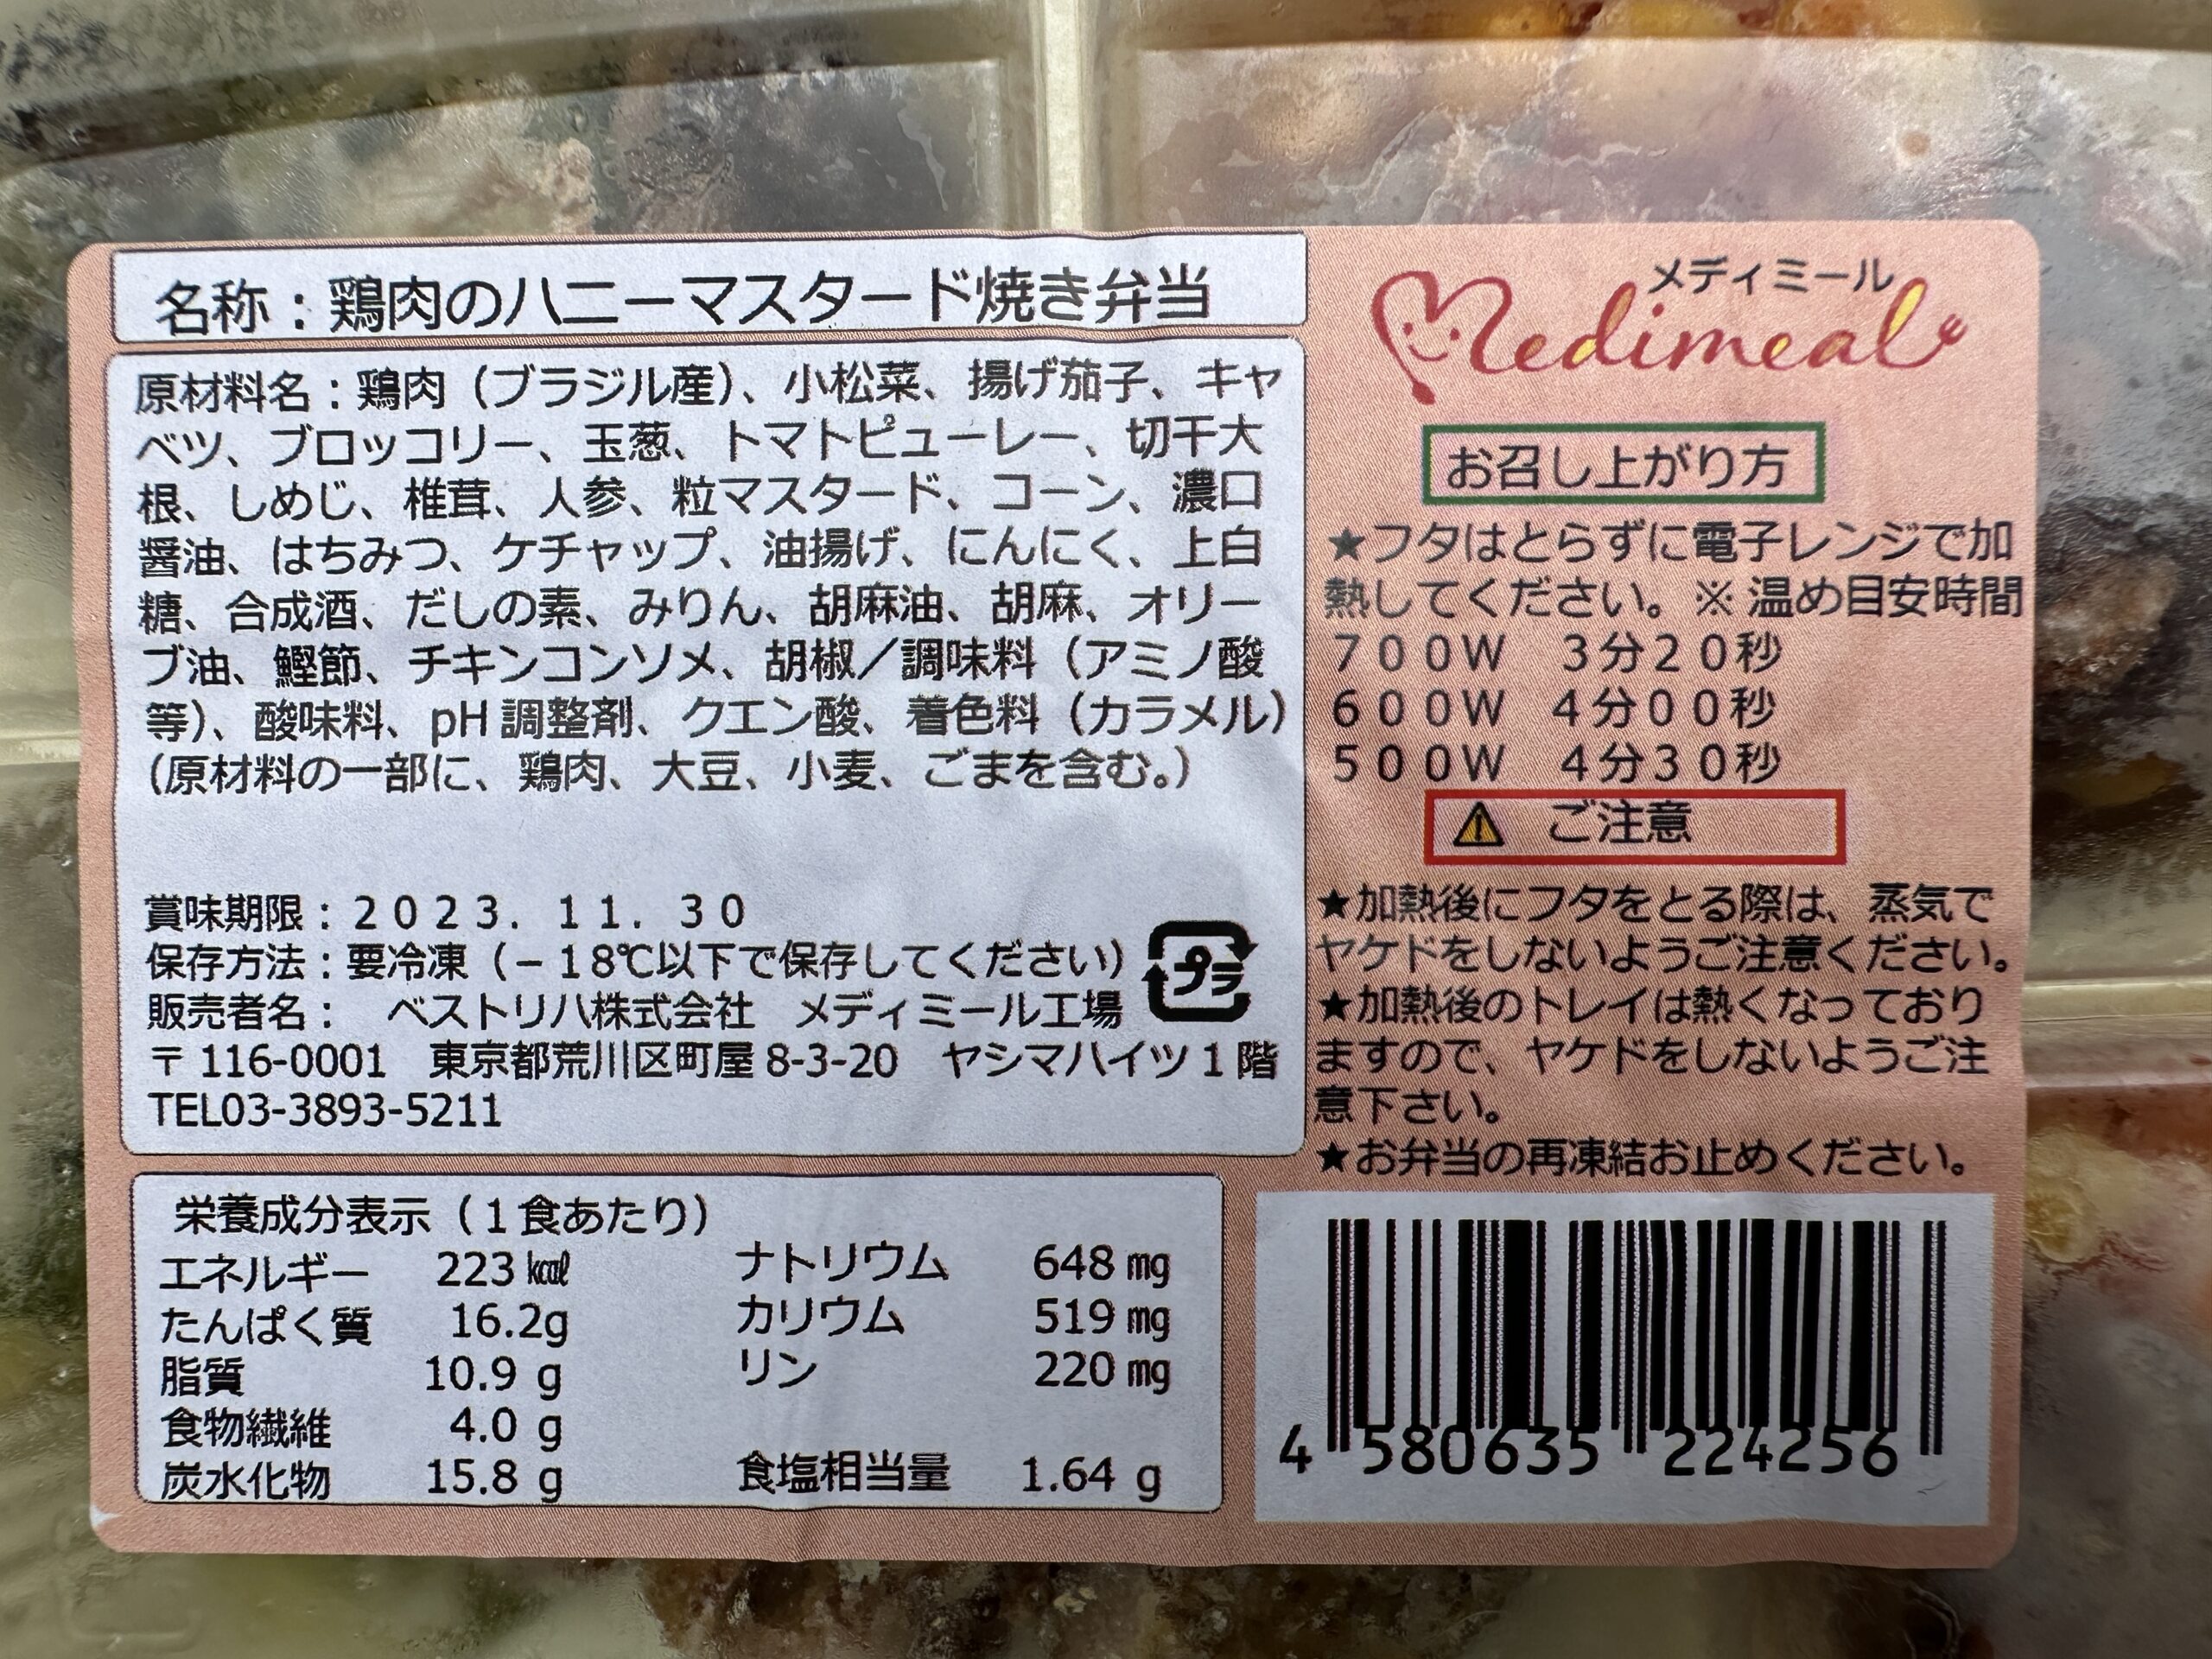 メディミール鶏肉のハニーマスタード焼き弁当原材料